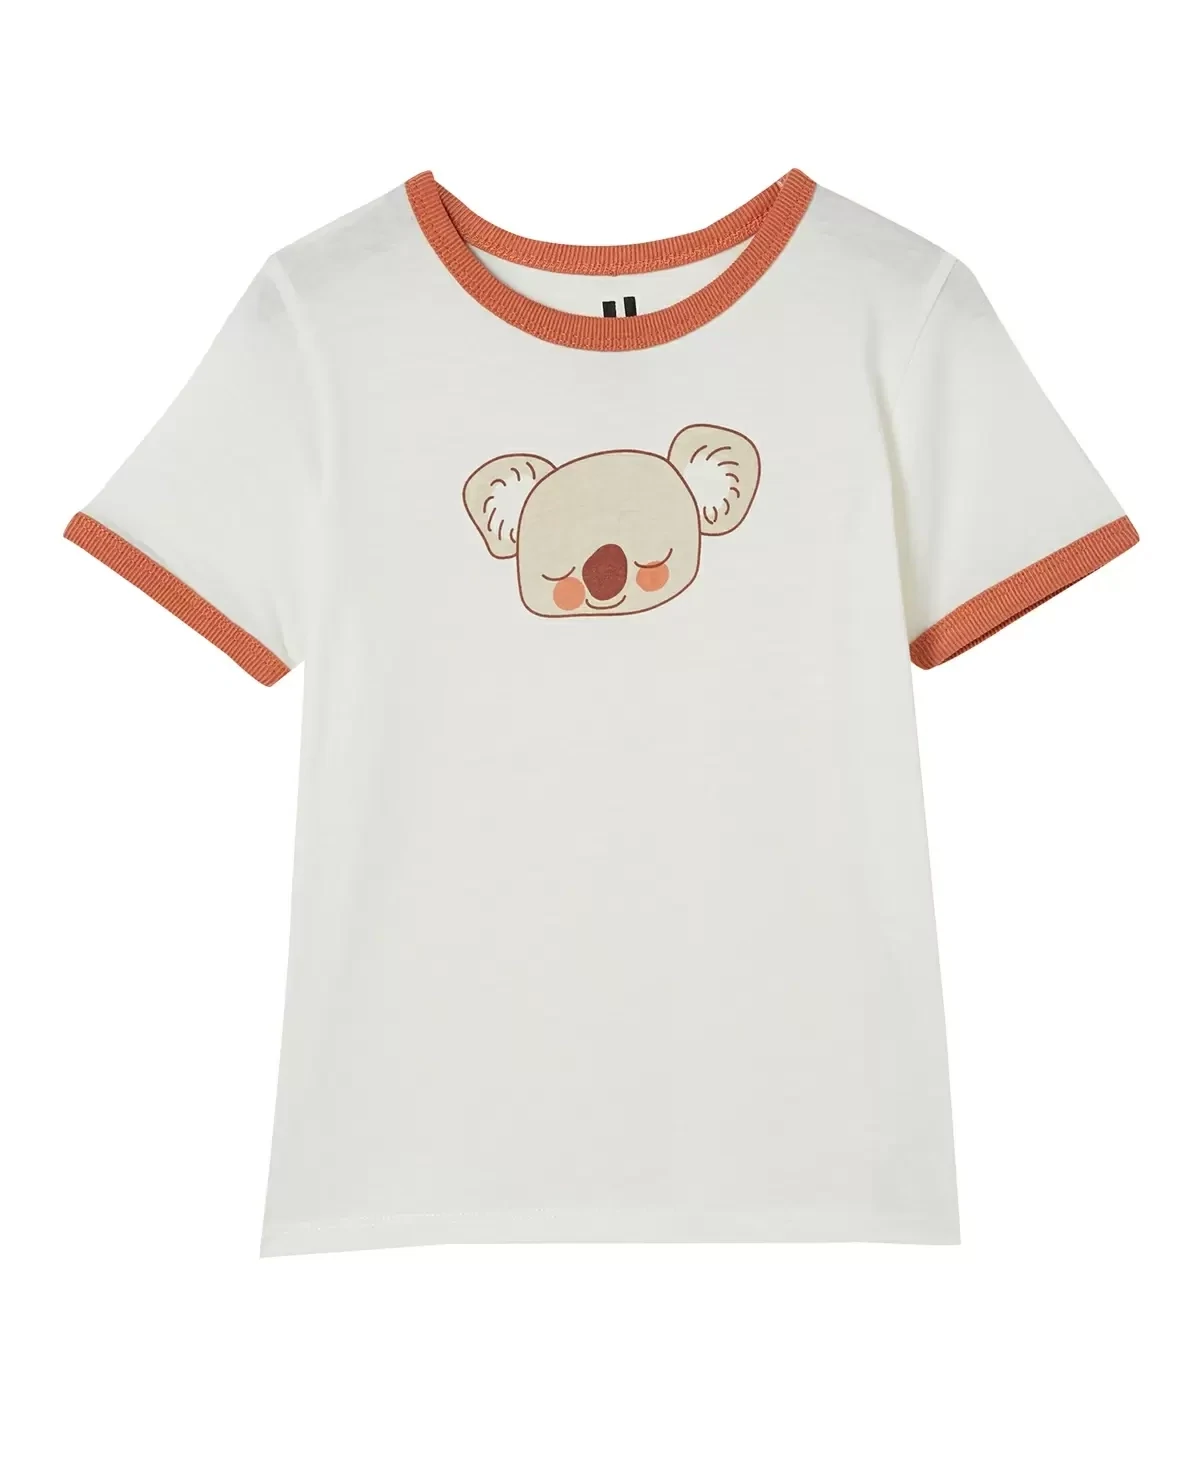 Cotton On Little Girls Penelope Short Sleeve Ringer T-shirt - Size 5